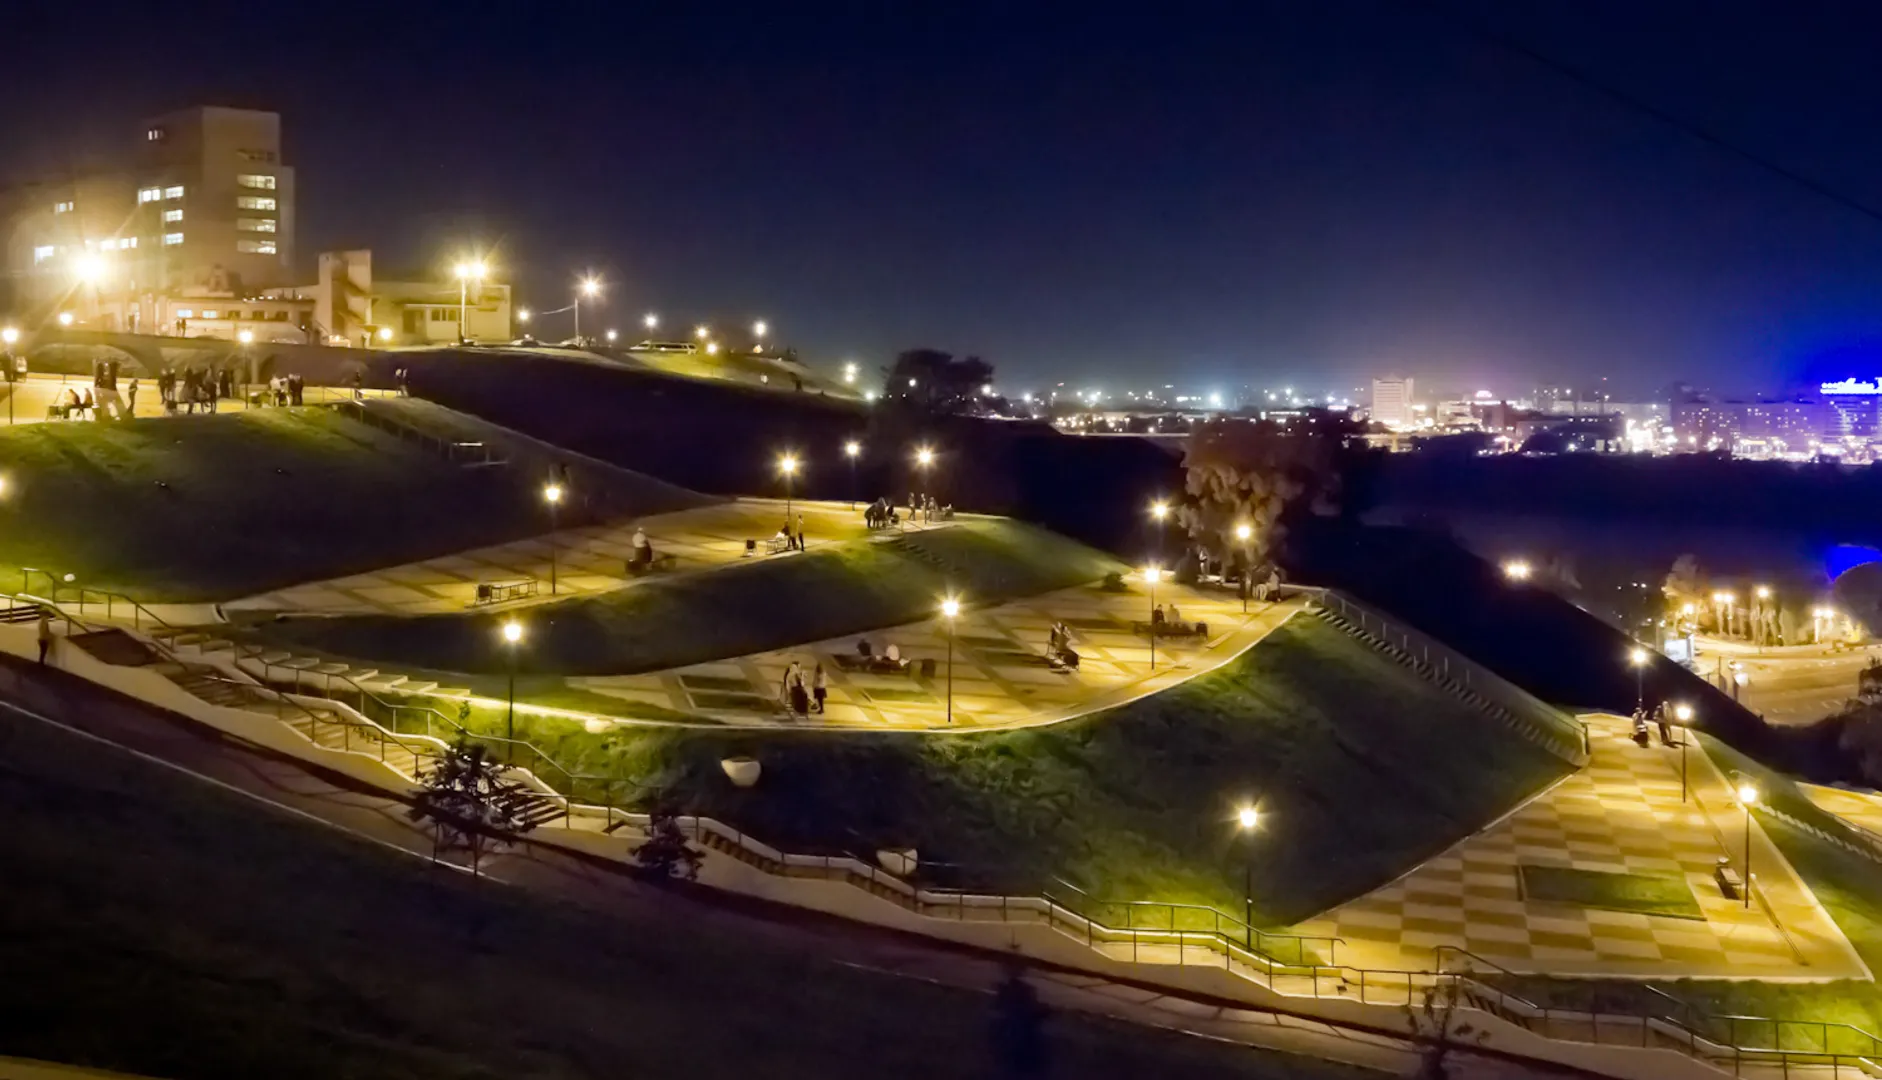 Подобную красоту можно наблюдать каждый вечер в парке 800-летия города (100 метров от квартиры)